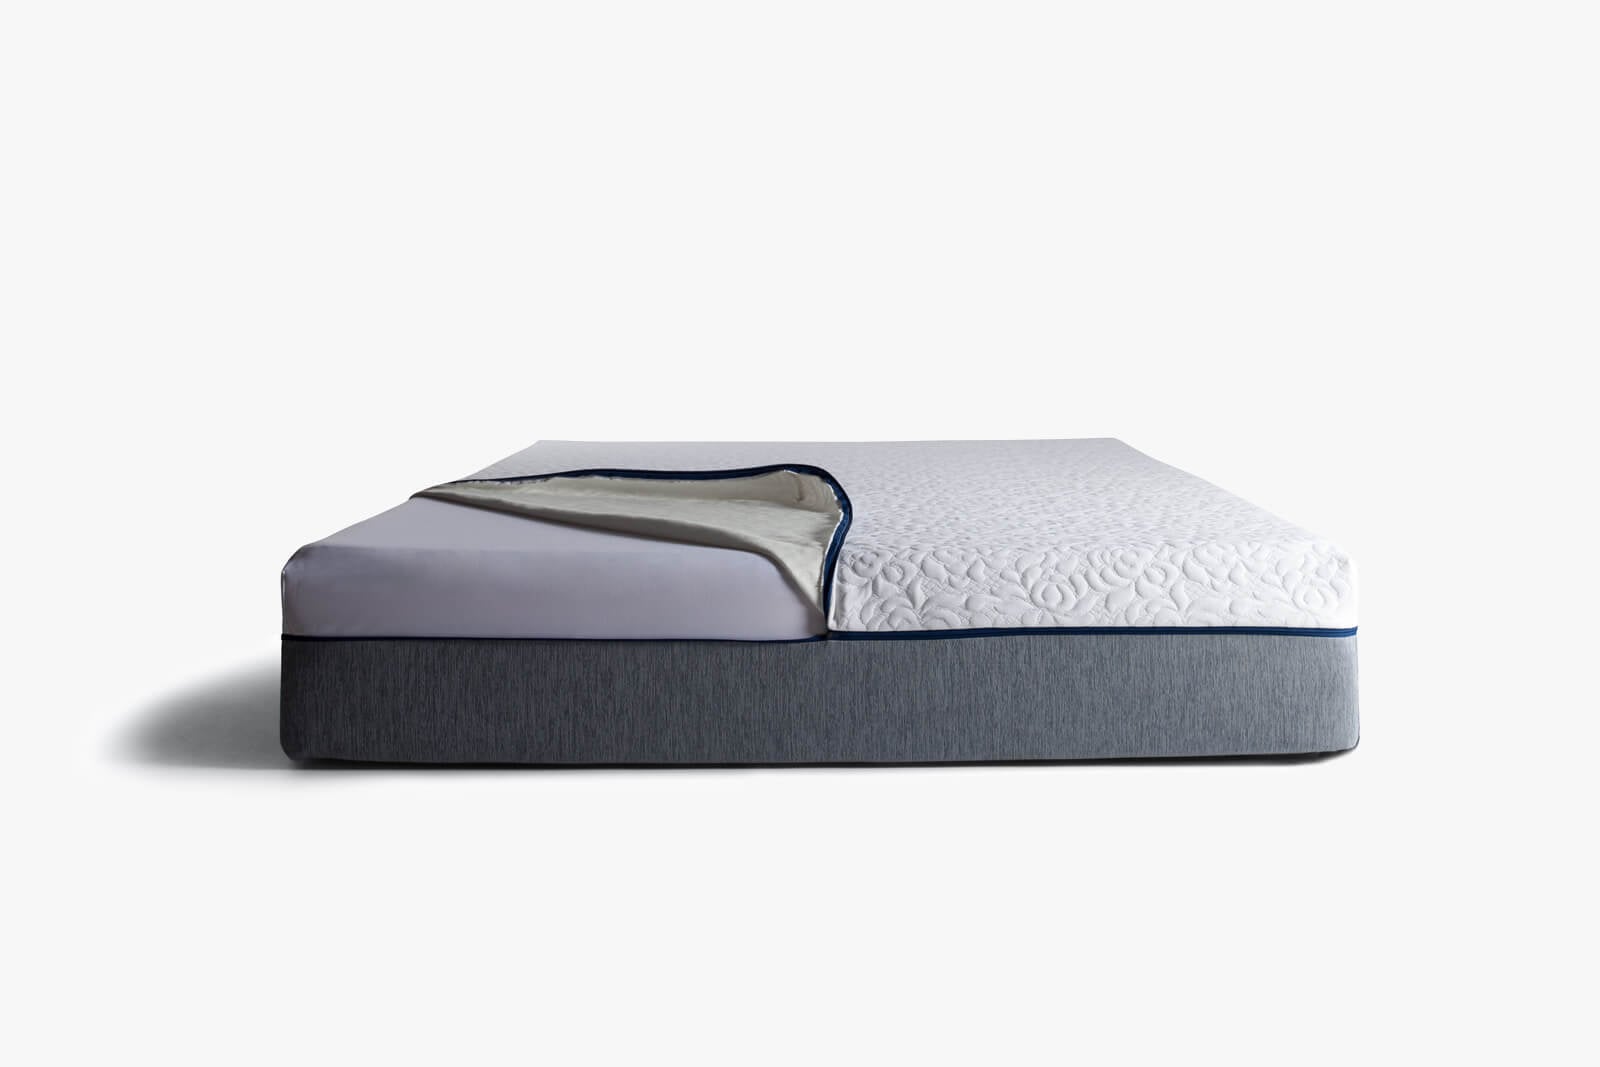 Novosbed mattress materials and design